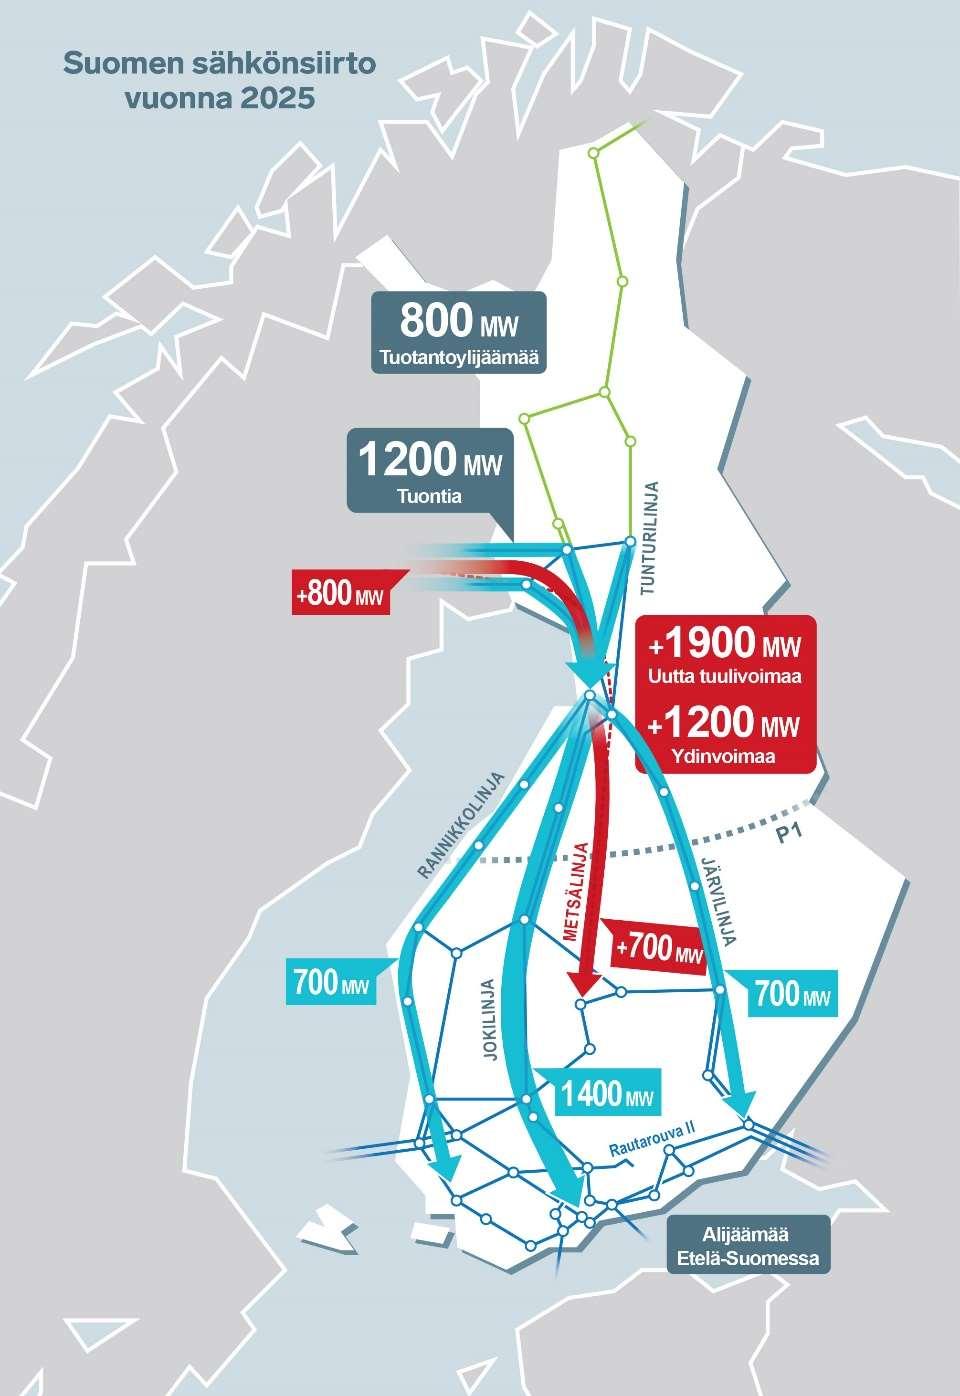 Pohjois-etelä-siirtokapasiteetti pitkän aikavälin investointistrategian ykkösasia Etelä-Suomessa alijäämää Pohjois-Suomessa ylijäämää Länsirannikolle suunnitteilla uutta tuulivoimaa 1 900 megawattia